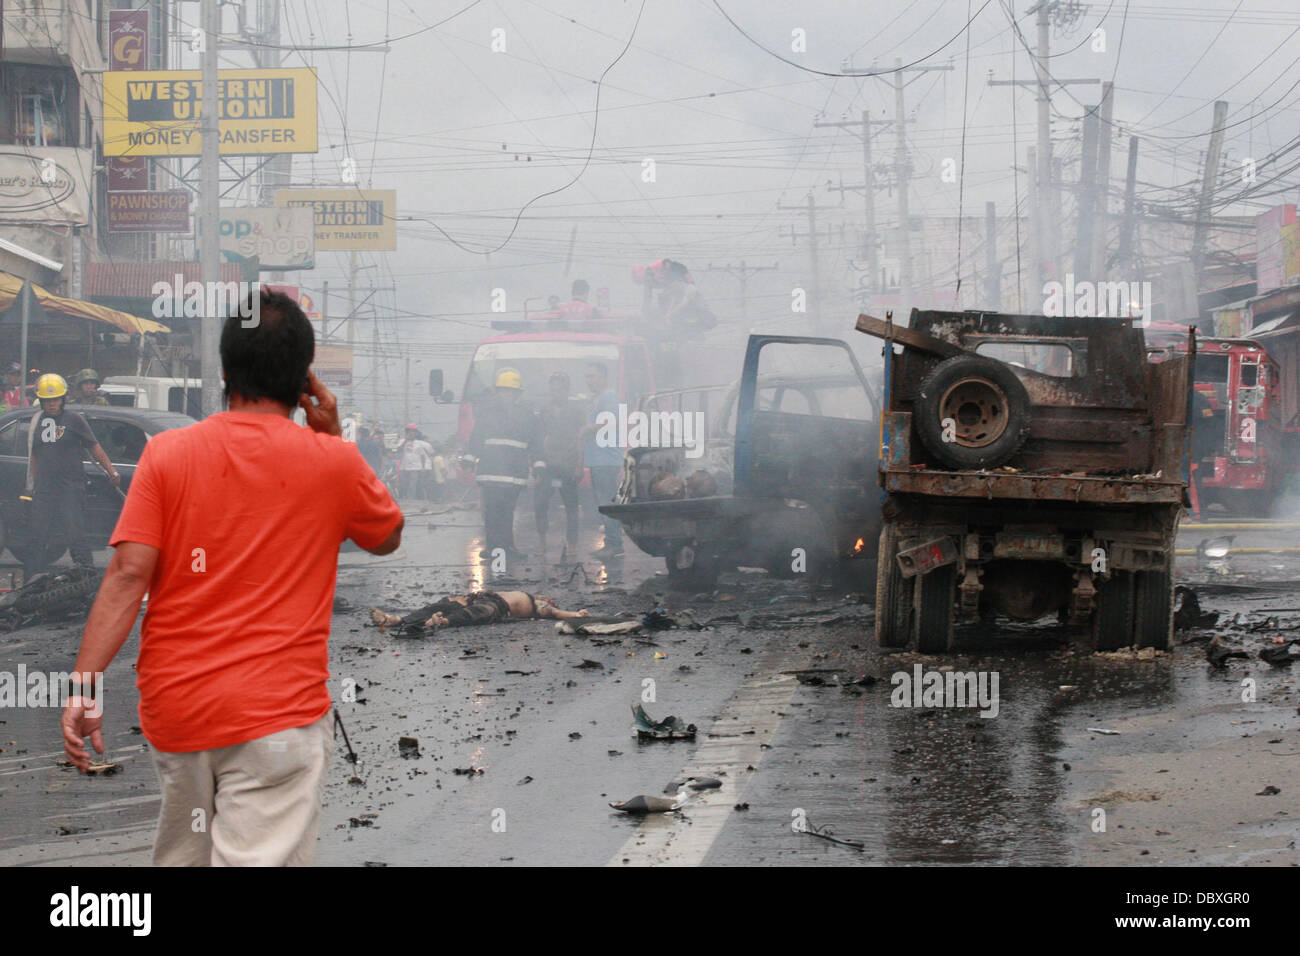 Cotabato, Philippinen. 5. August 2013. Szene nach einem tödlichen Autobombe Explosion in der viel befahrenen Straße des südlichen philippinischen Stadt Cotabato. Die tödlichere Explosion mindestens sechs Menschen getötet und verwundet 29. Es zur Detonation gebracht, wie ein Auto übergeben, trägt einen lokalen Beamter, entkam unverletzt. Es war nicht klar, ob sie das Ziel war. Cotabato befindet sich auf der Insel Mindanao, die durch einen 40jährigen Konflikt zwischen Regierungstruppen und islamistischen Rebellen zerbrochen worden. Es ist der zweite tödliche Bombardierung auf Mindanao in 10 Tagen. Eine Explosion in der Stadt Cagayan de Oro am 26. Juli acht Menschen getötet. Stockfoto